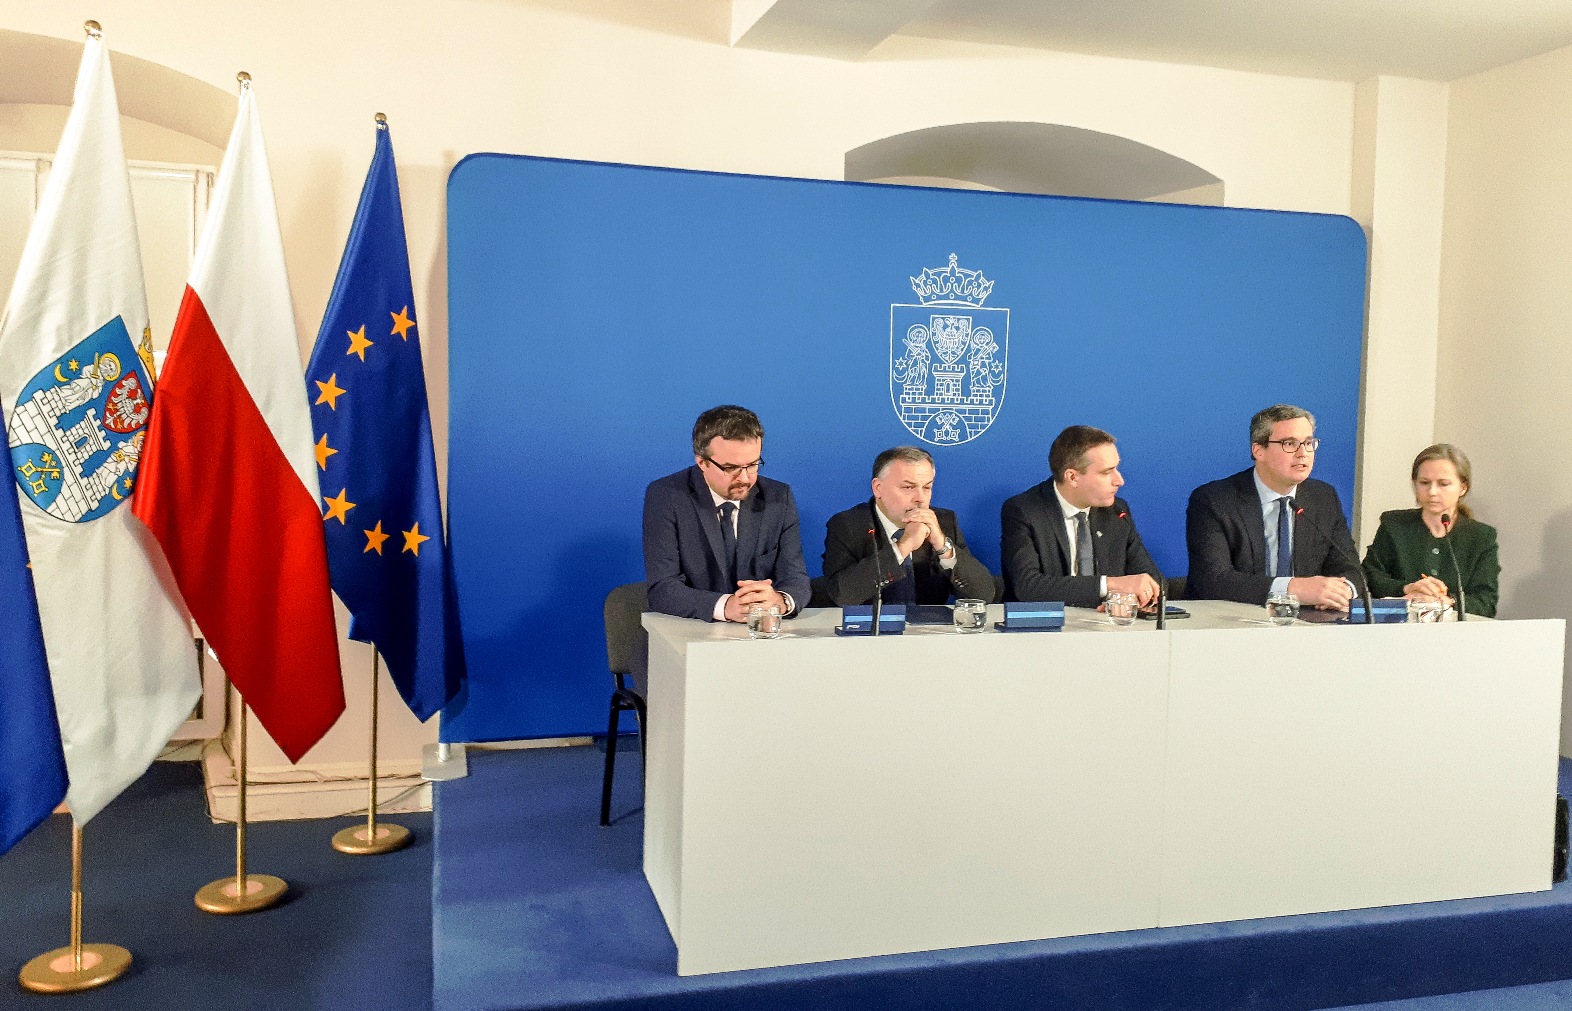 Aldesa - Aldesa podpisała umowę na przebudowę ronda Rataje w Poznaniu